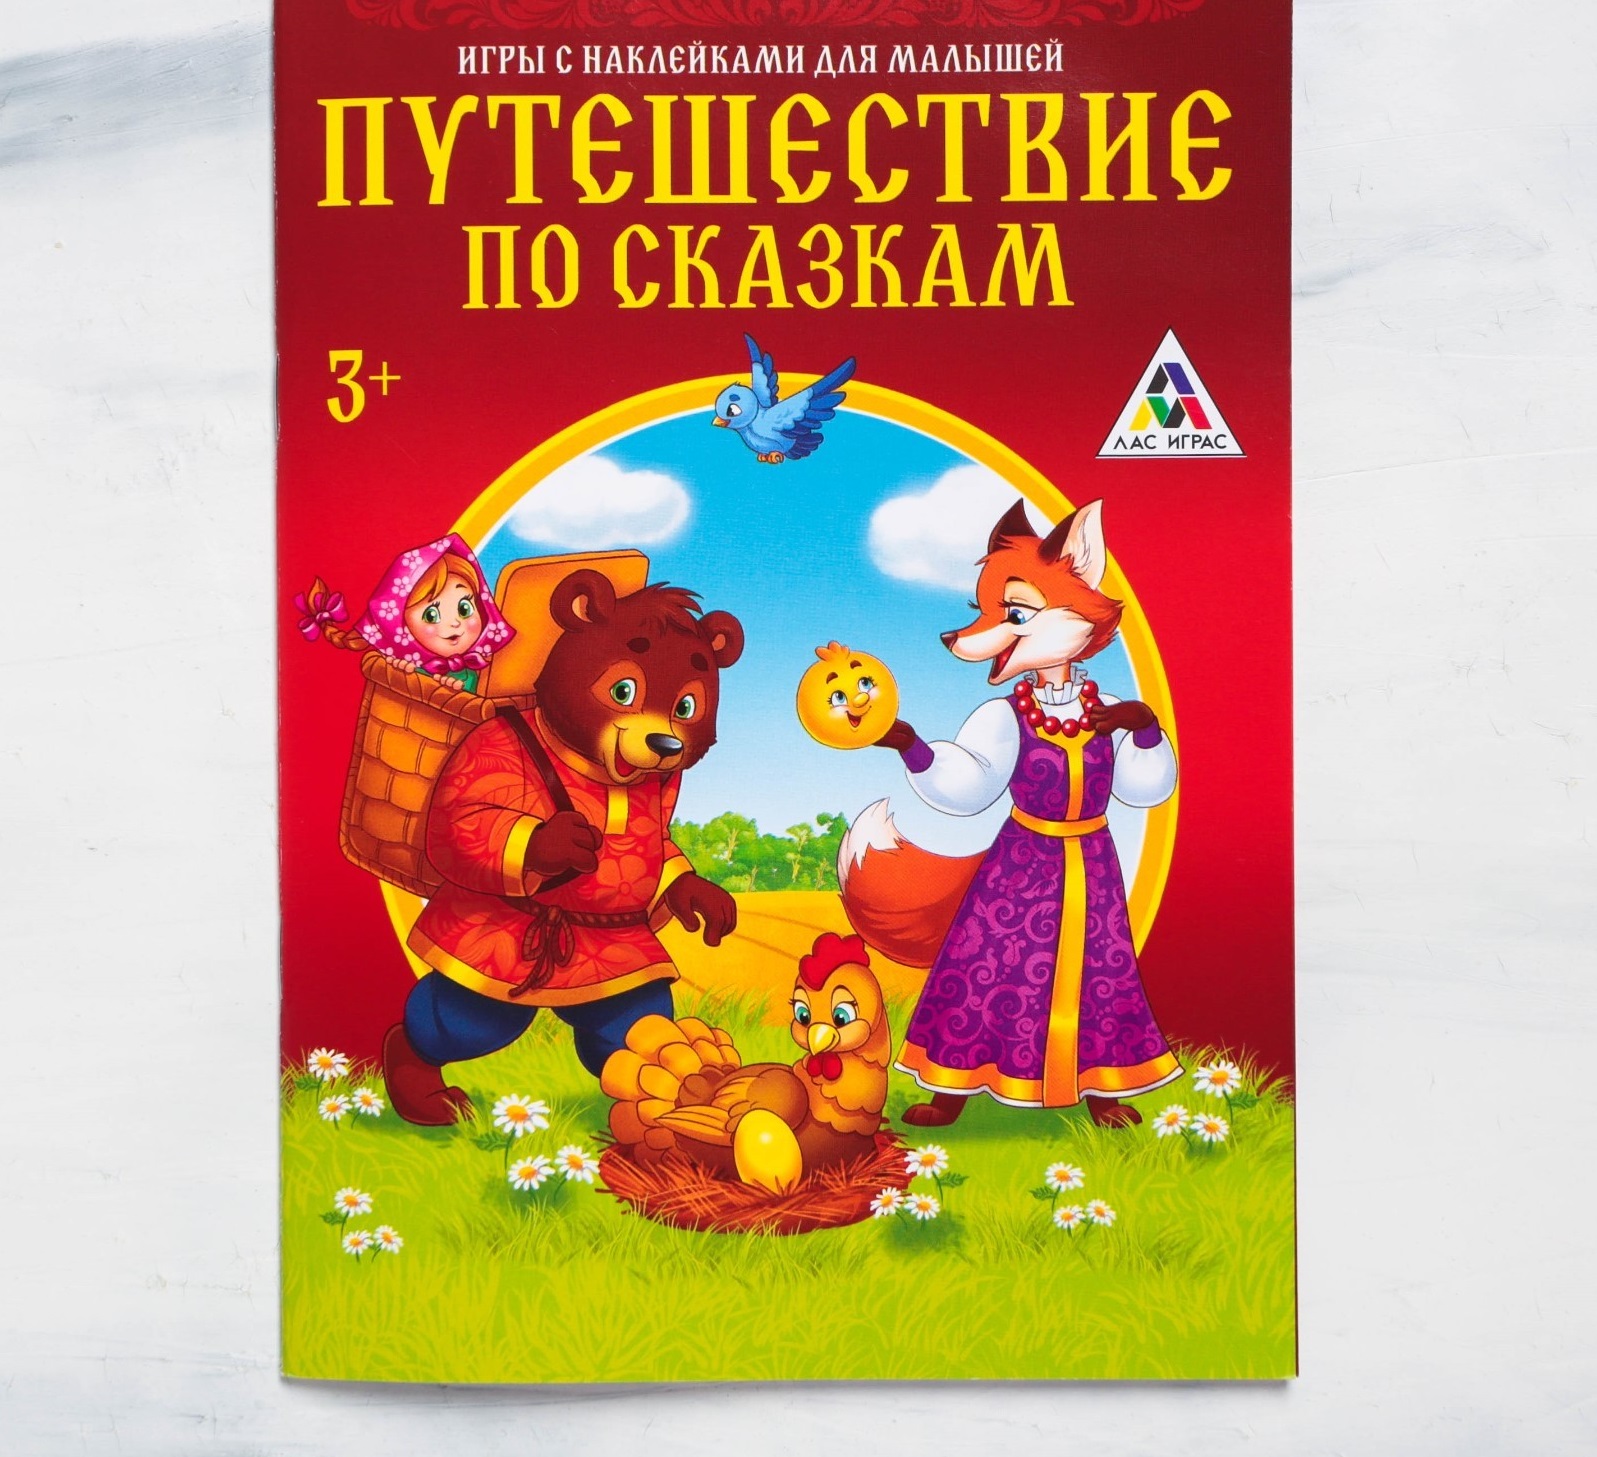 Игры с наклейками 4246023 для малышей Путешествие по сказкам - Санкт-Петербург 